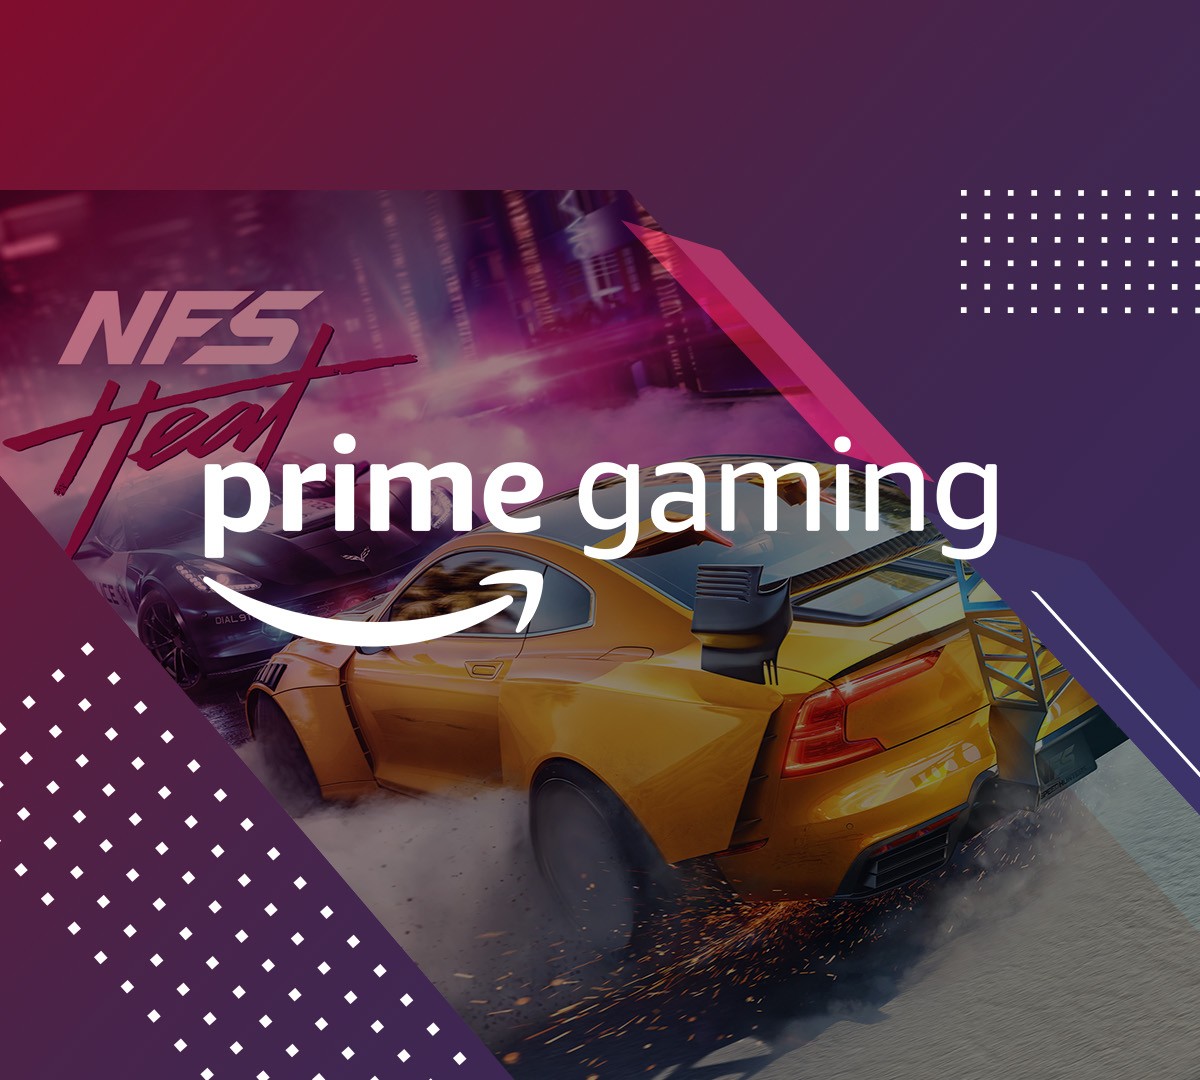 Prime Gaming anuncia parceria com Roblox